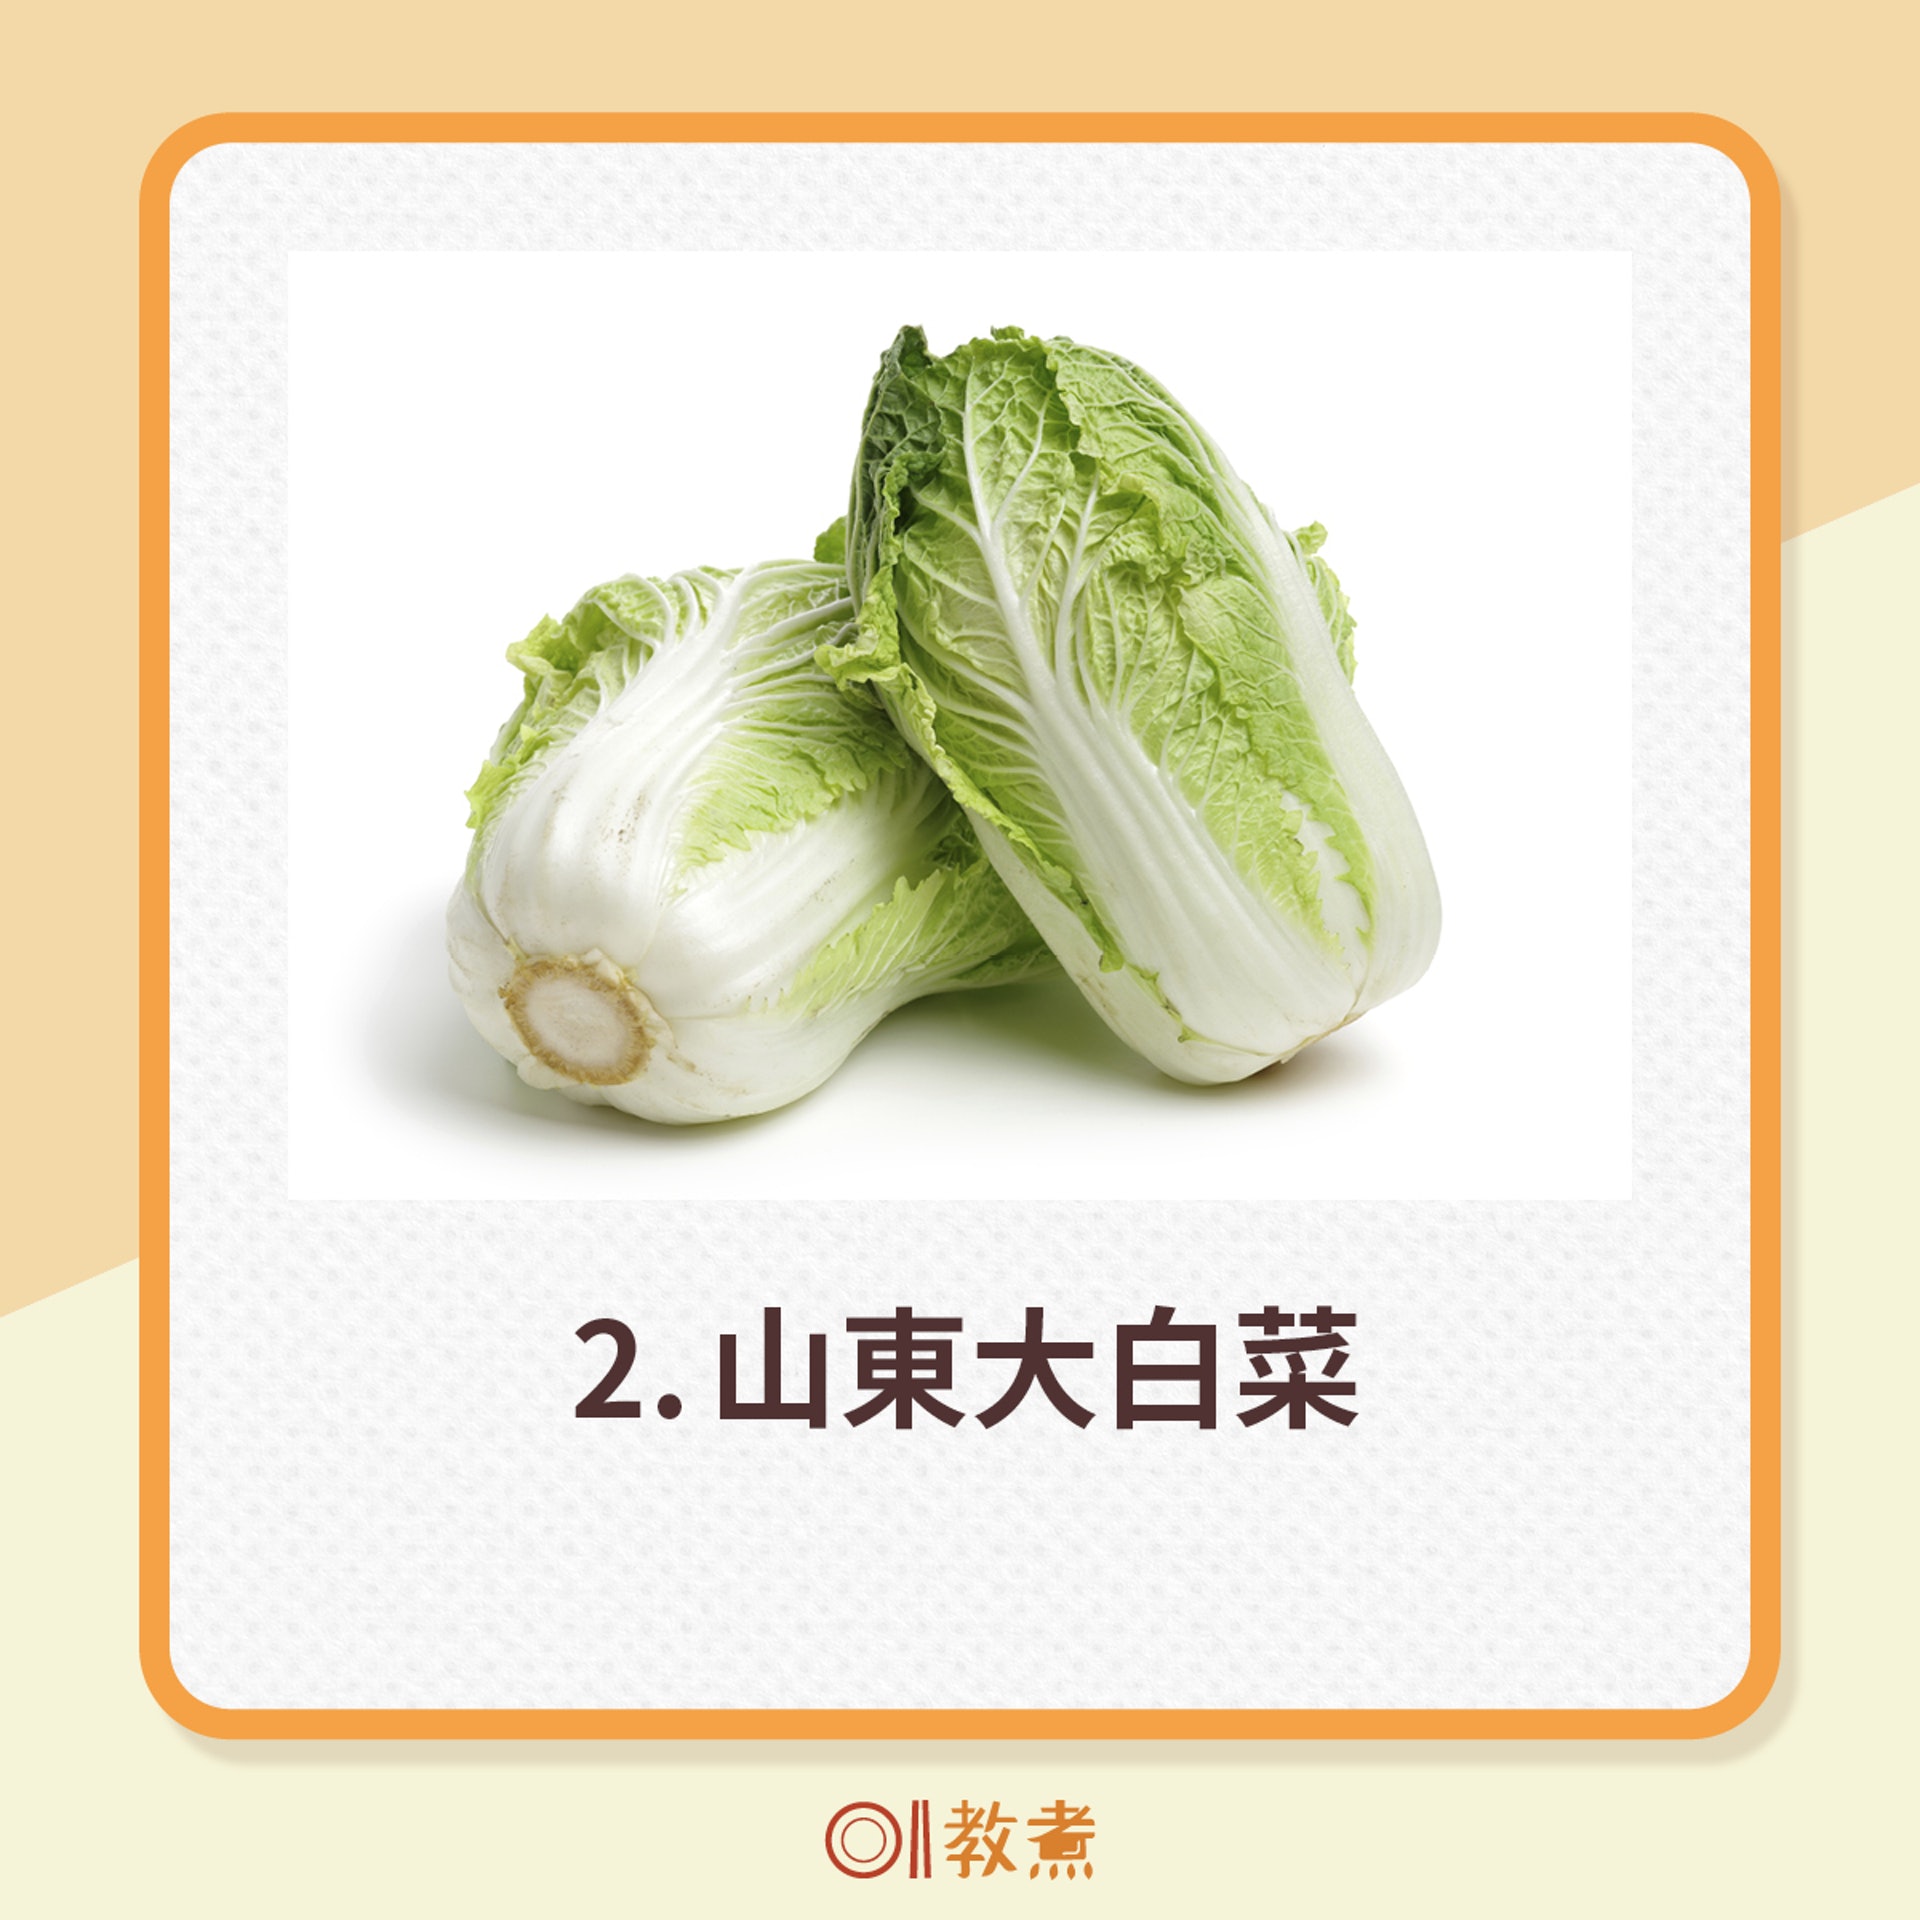 6種常見白菜的特色及建議烹調方式。